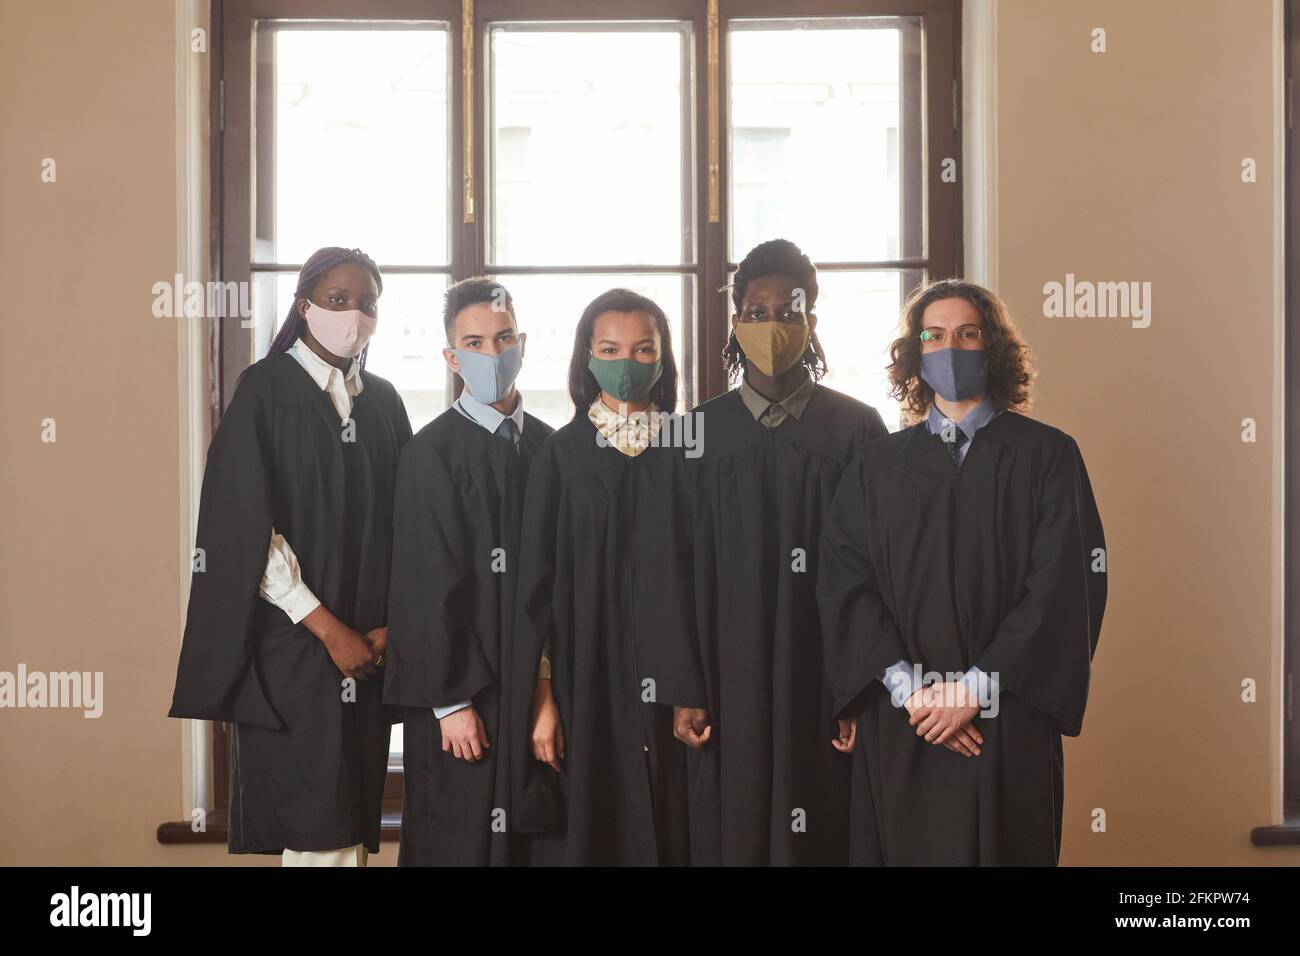 Grupo diverso de jóvenes que llevan máscaras y ceremonial negro batas durante la ceremonia de graduación en la pandemia de covid Foto de stock